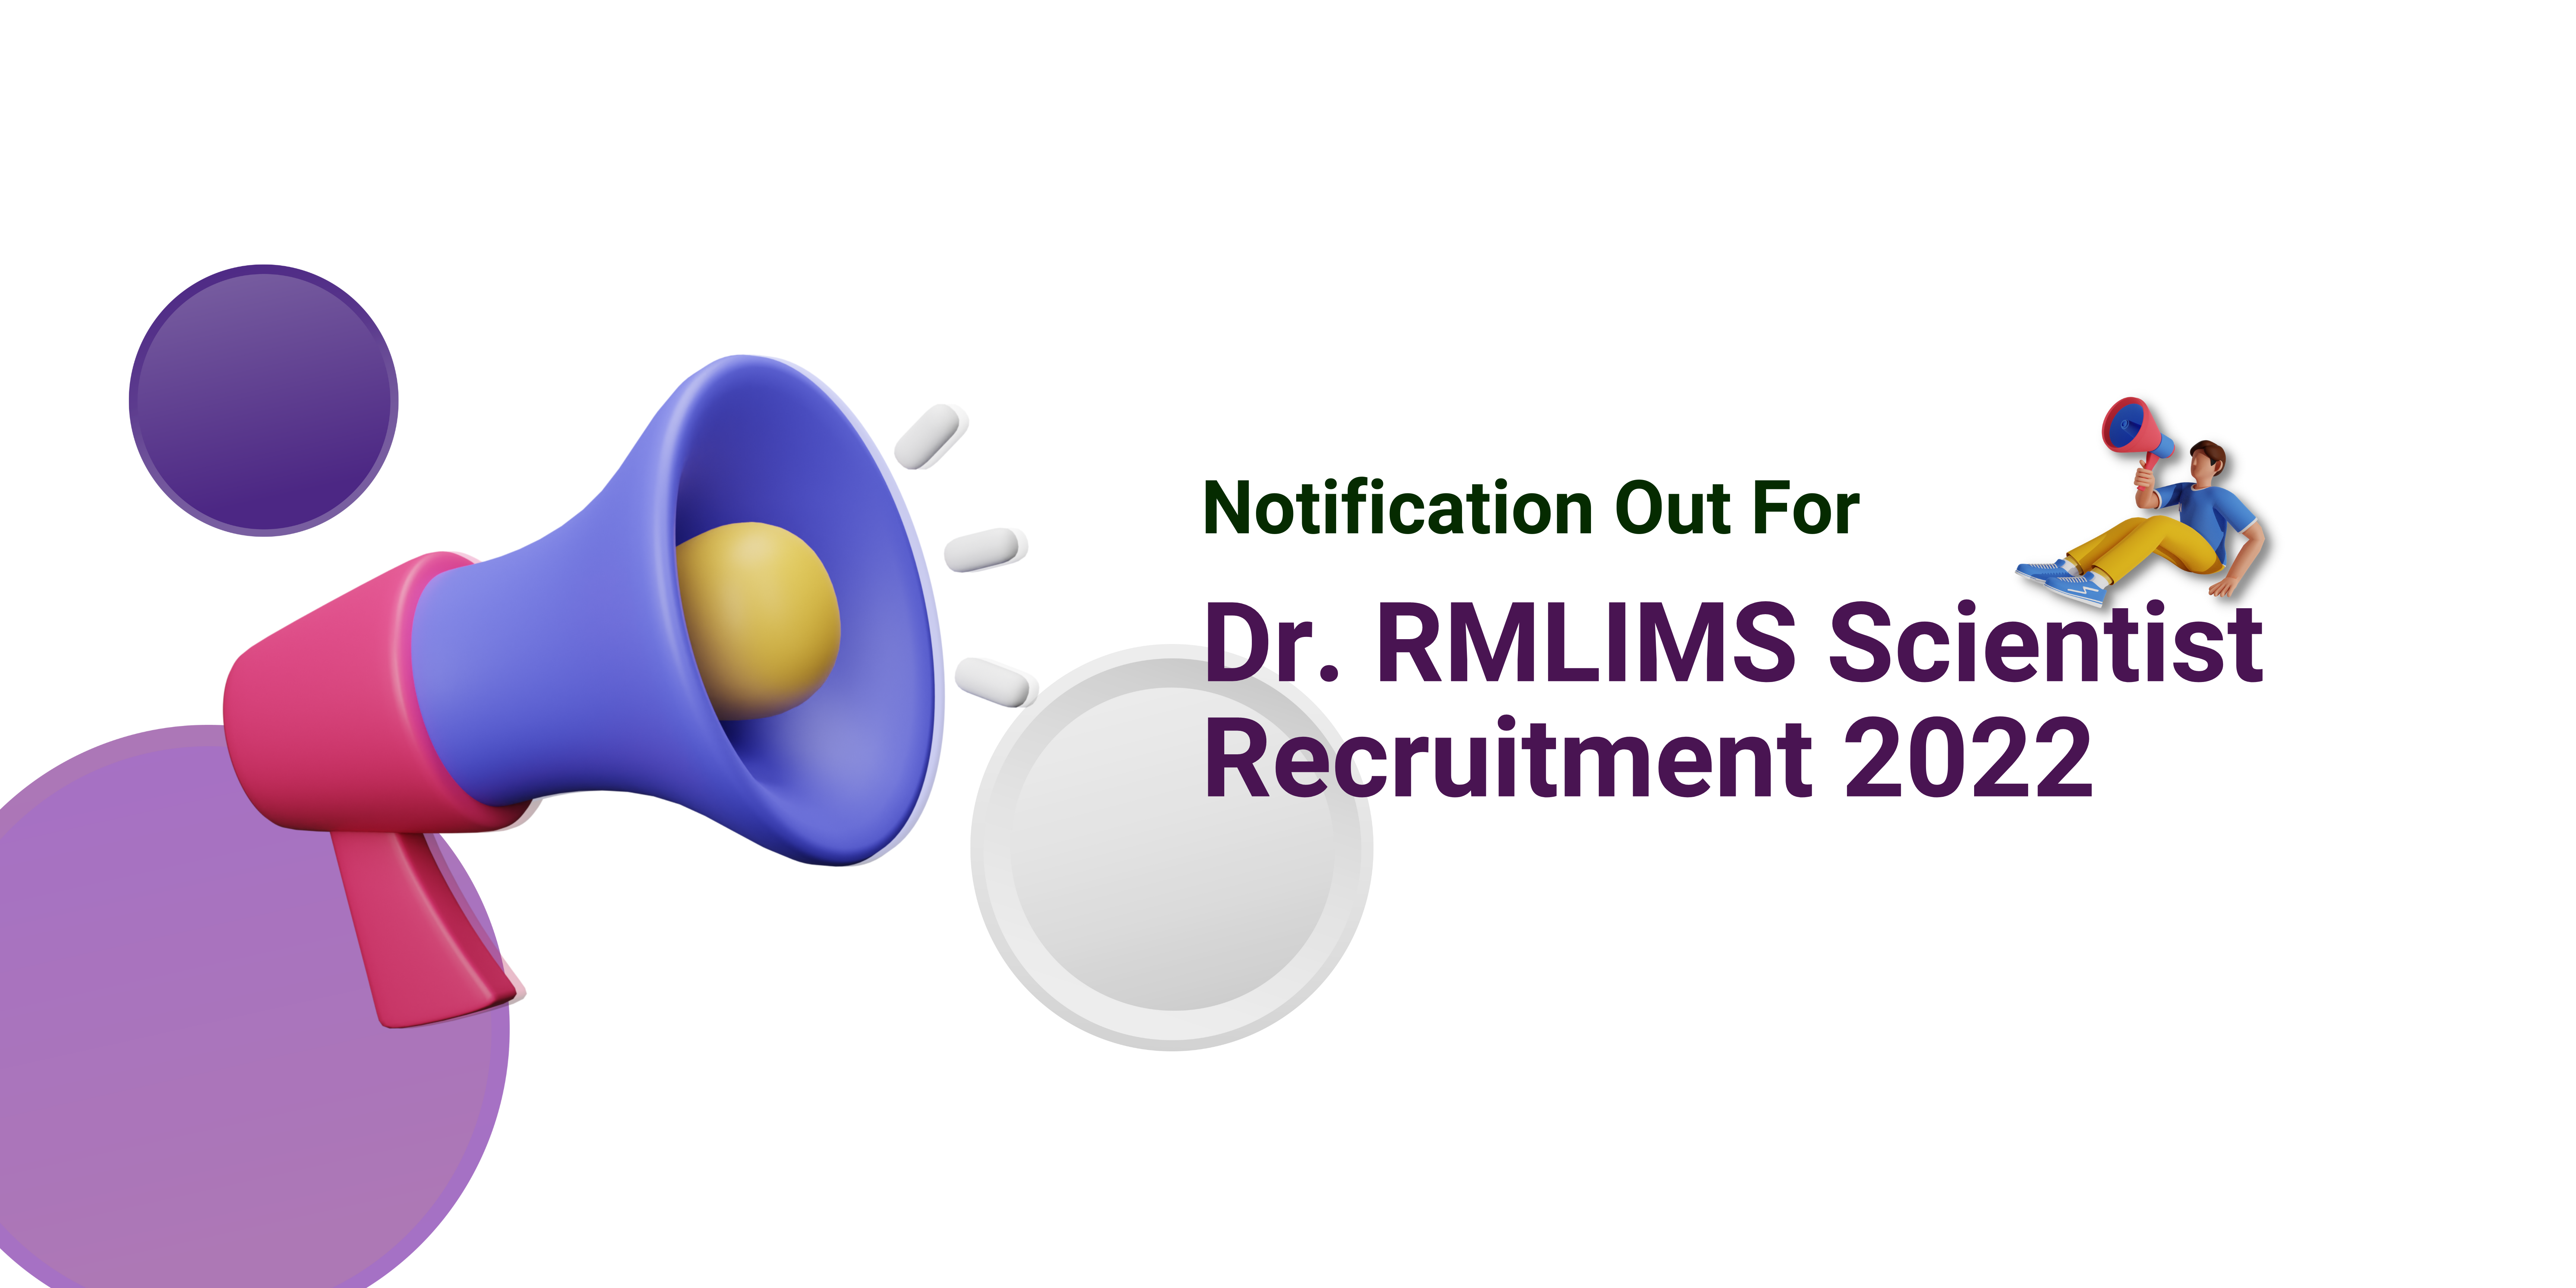 Dr. RMLIMS Scientist Recruitment 2022